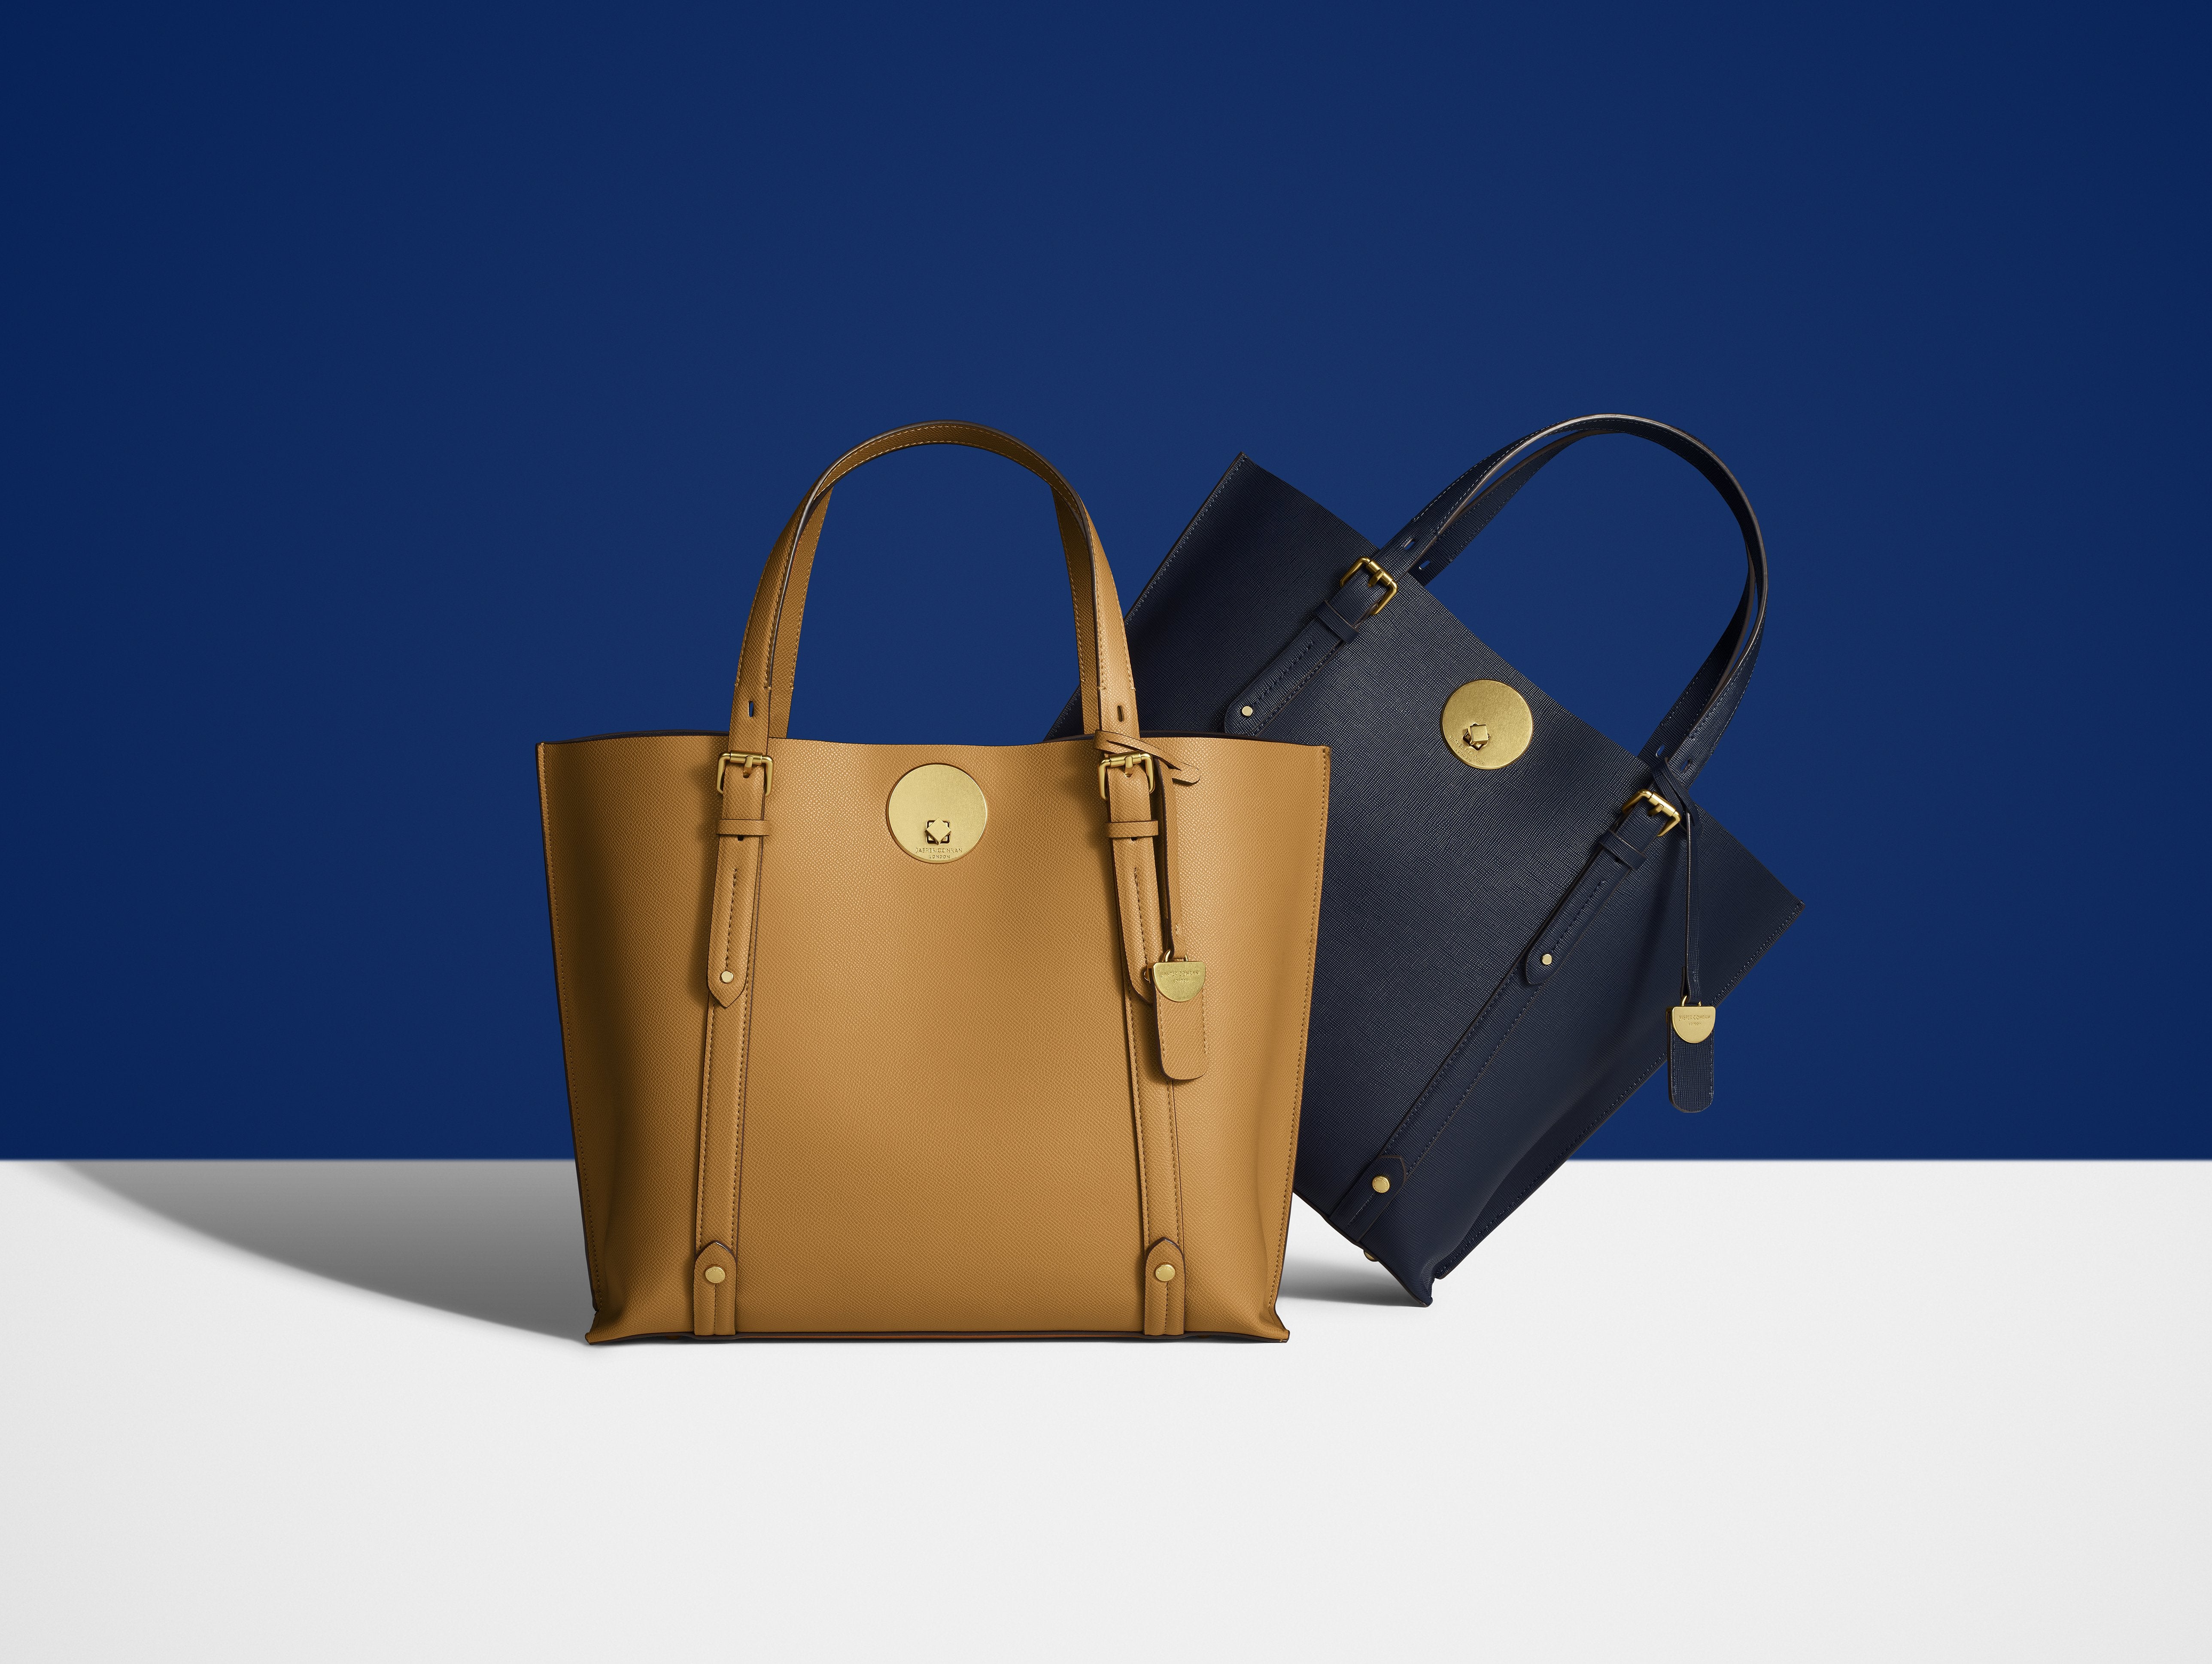 Designed Handbags for women